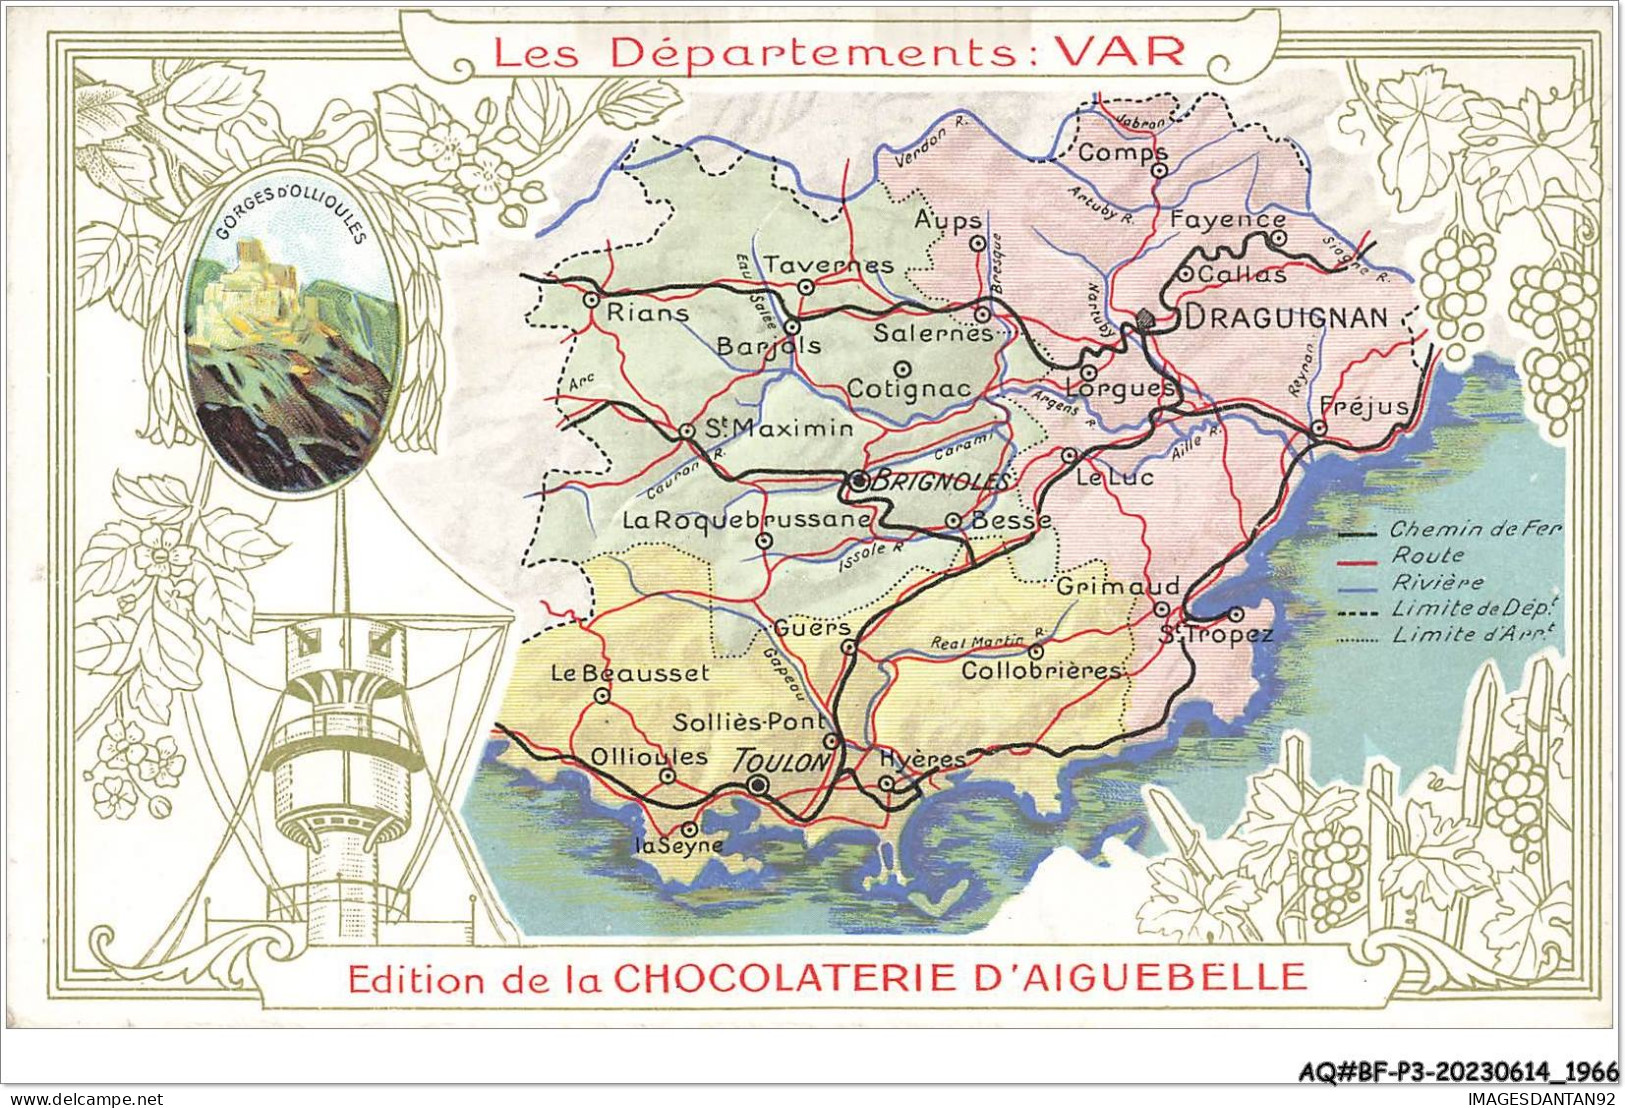 AQ#BFP3-CHROMOS-0981 - CHOCOLAT D'AIGUEBELLE - Les Départements - Var - Aiguebelle